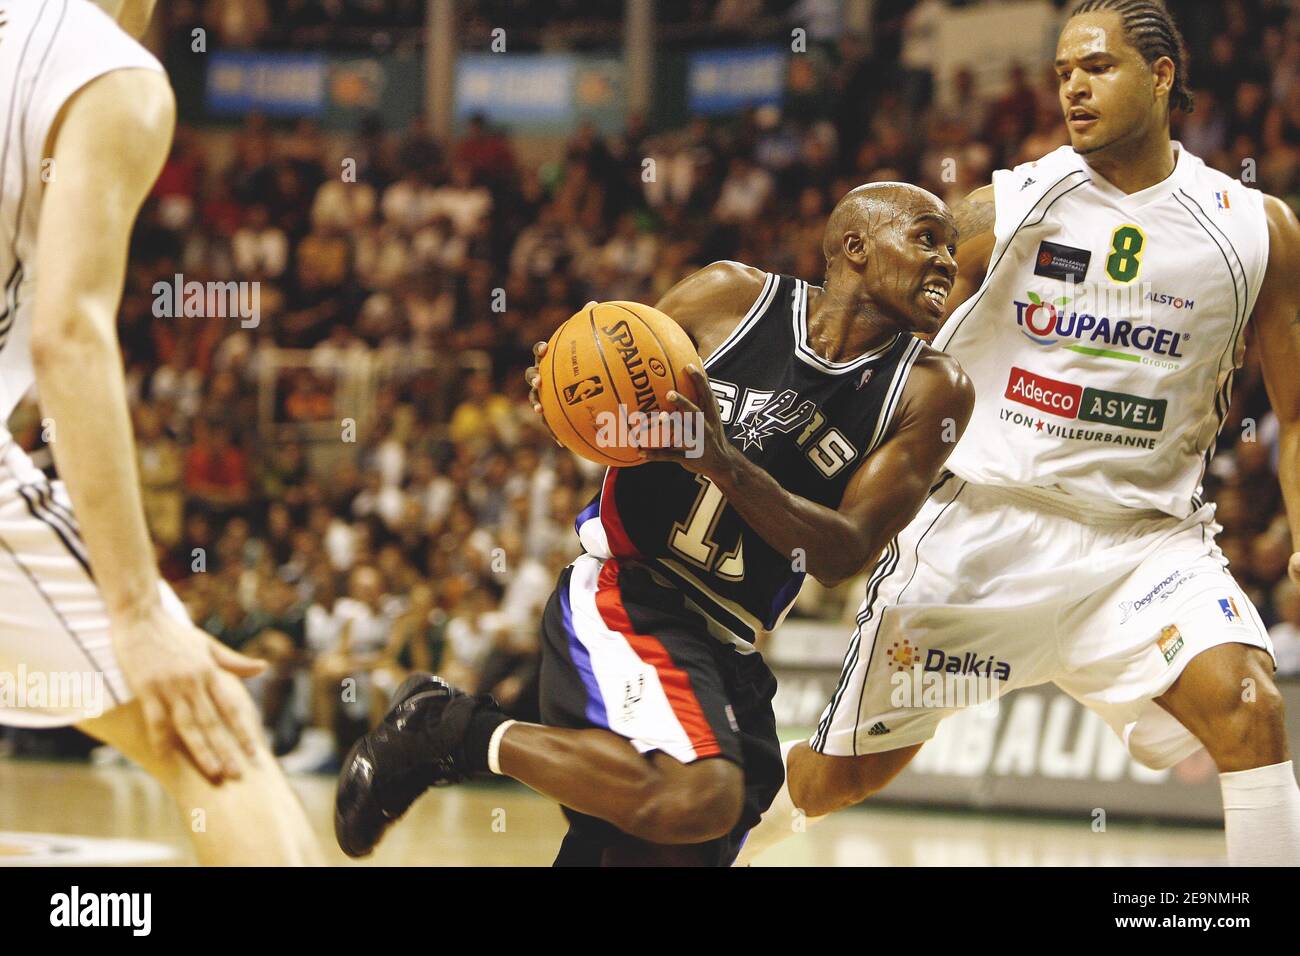 San Antonio Spurs' Spieler Jacque Vaughn versucht während der NBA Europe Live Tour, San Antonio Spurs gegen Asvel Lyon-Villeurbanne am 5. Oktober 2006 in Villeurbanne, Frankreich, in Richtung des Korbes zu fahren. Die Spurs gewannen 115-90. Foto von Christian Liewig/ABACAPRESS.COM Stockfoto